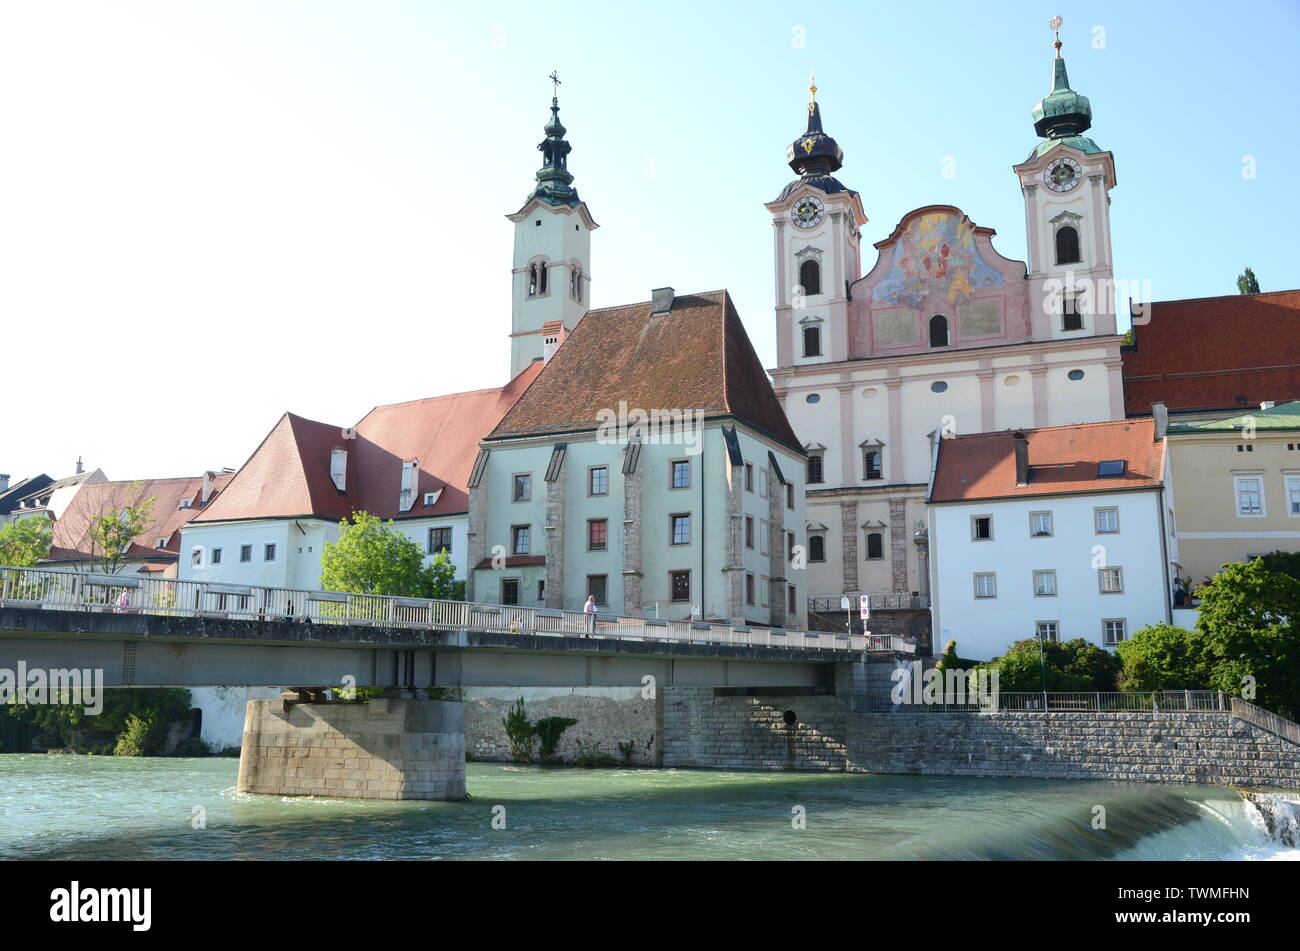 Steyrdorf dans le centre historique de la ville de Steyr, Autriche Banque D'Images